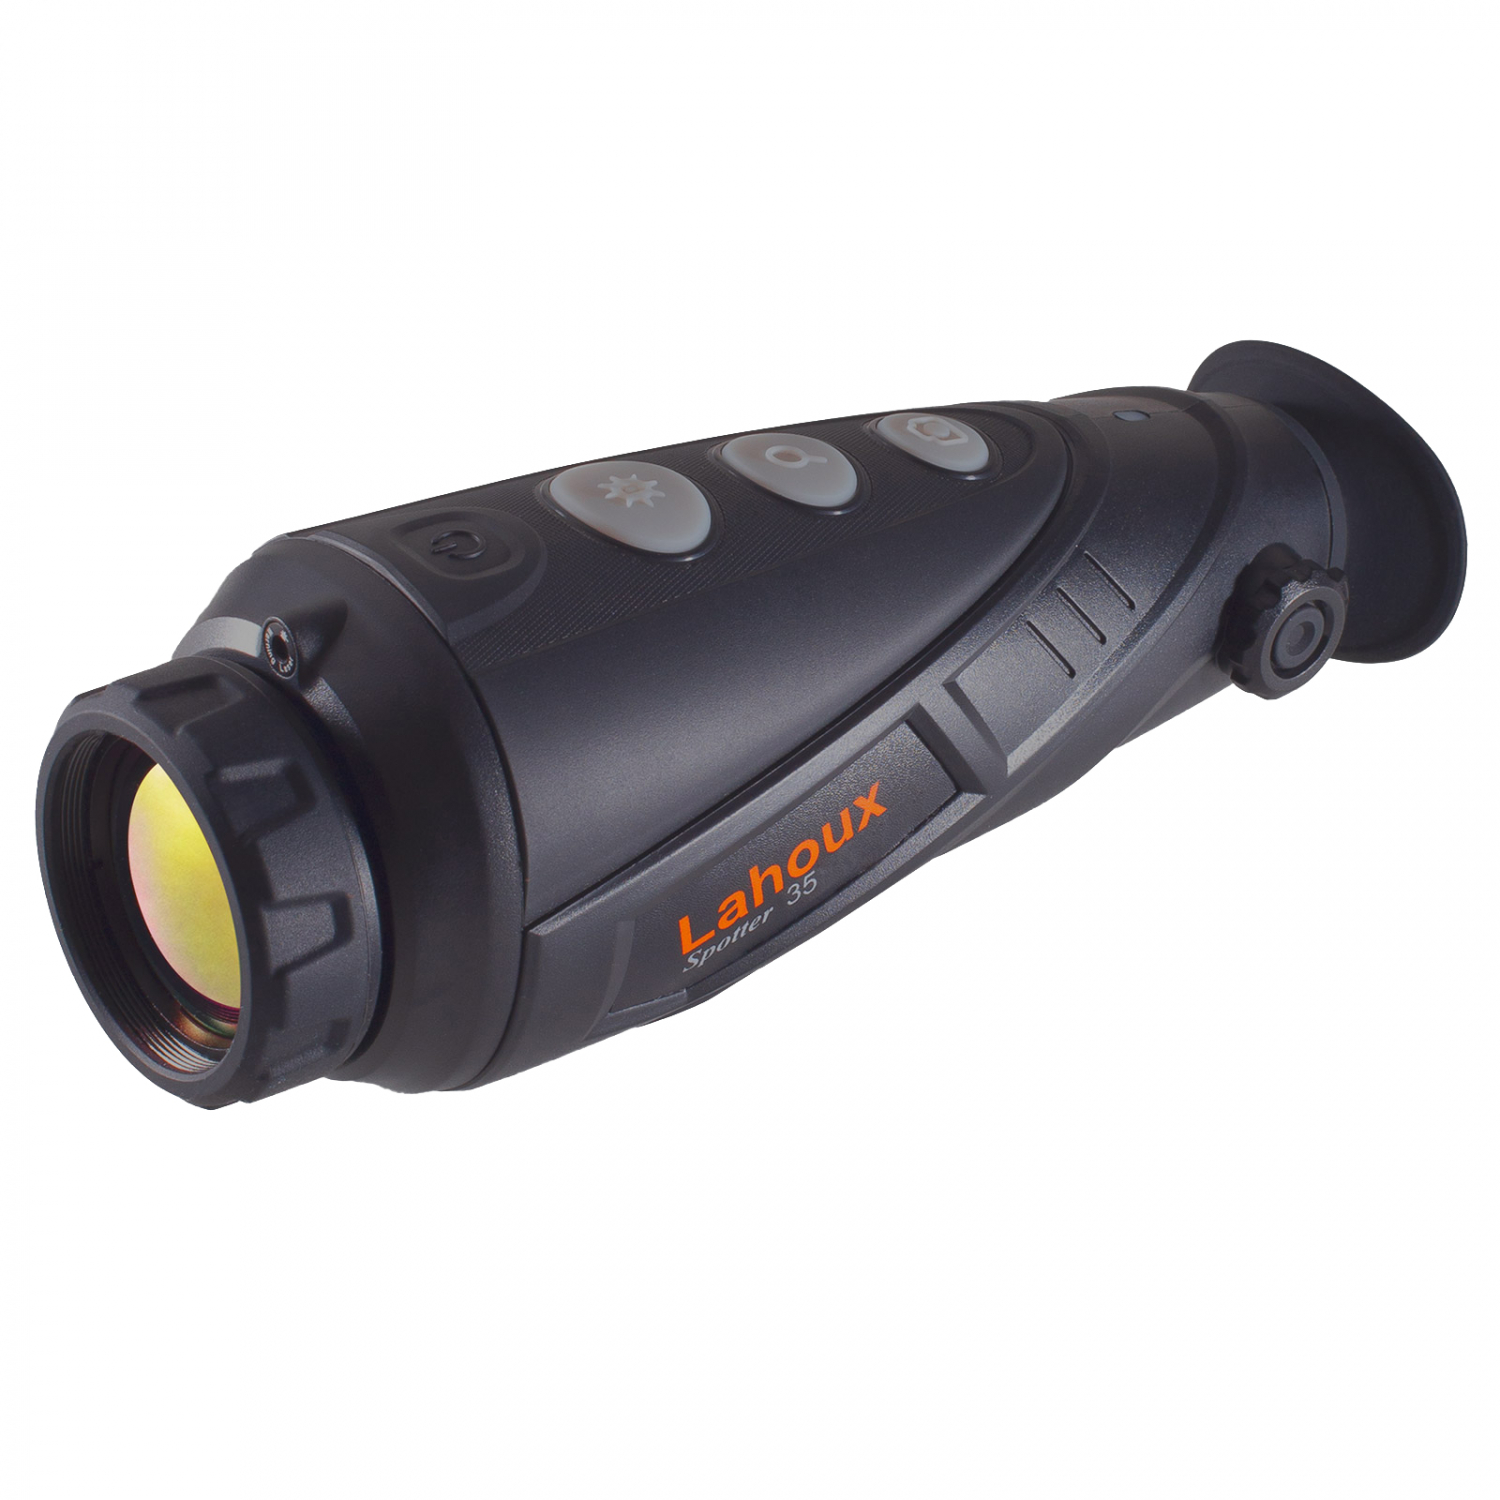 Lahoux Wärmebilldkamera Spotter 35 